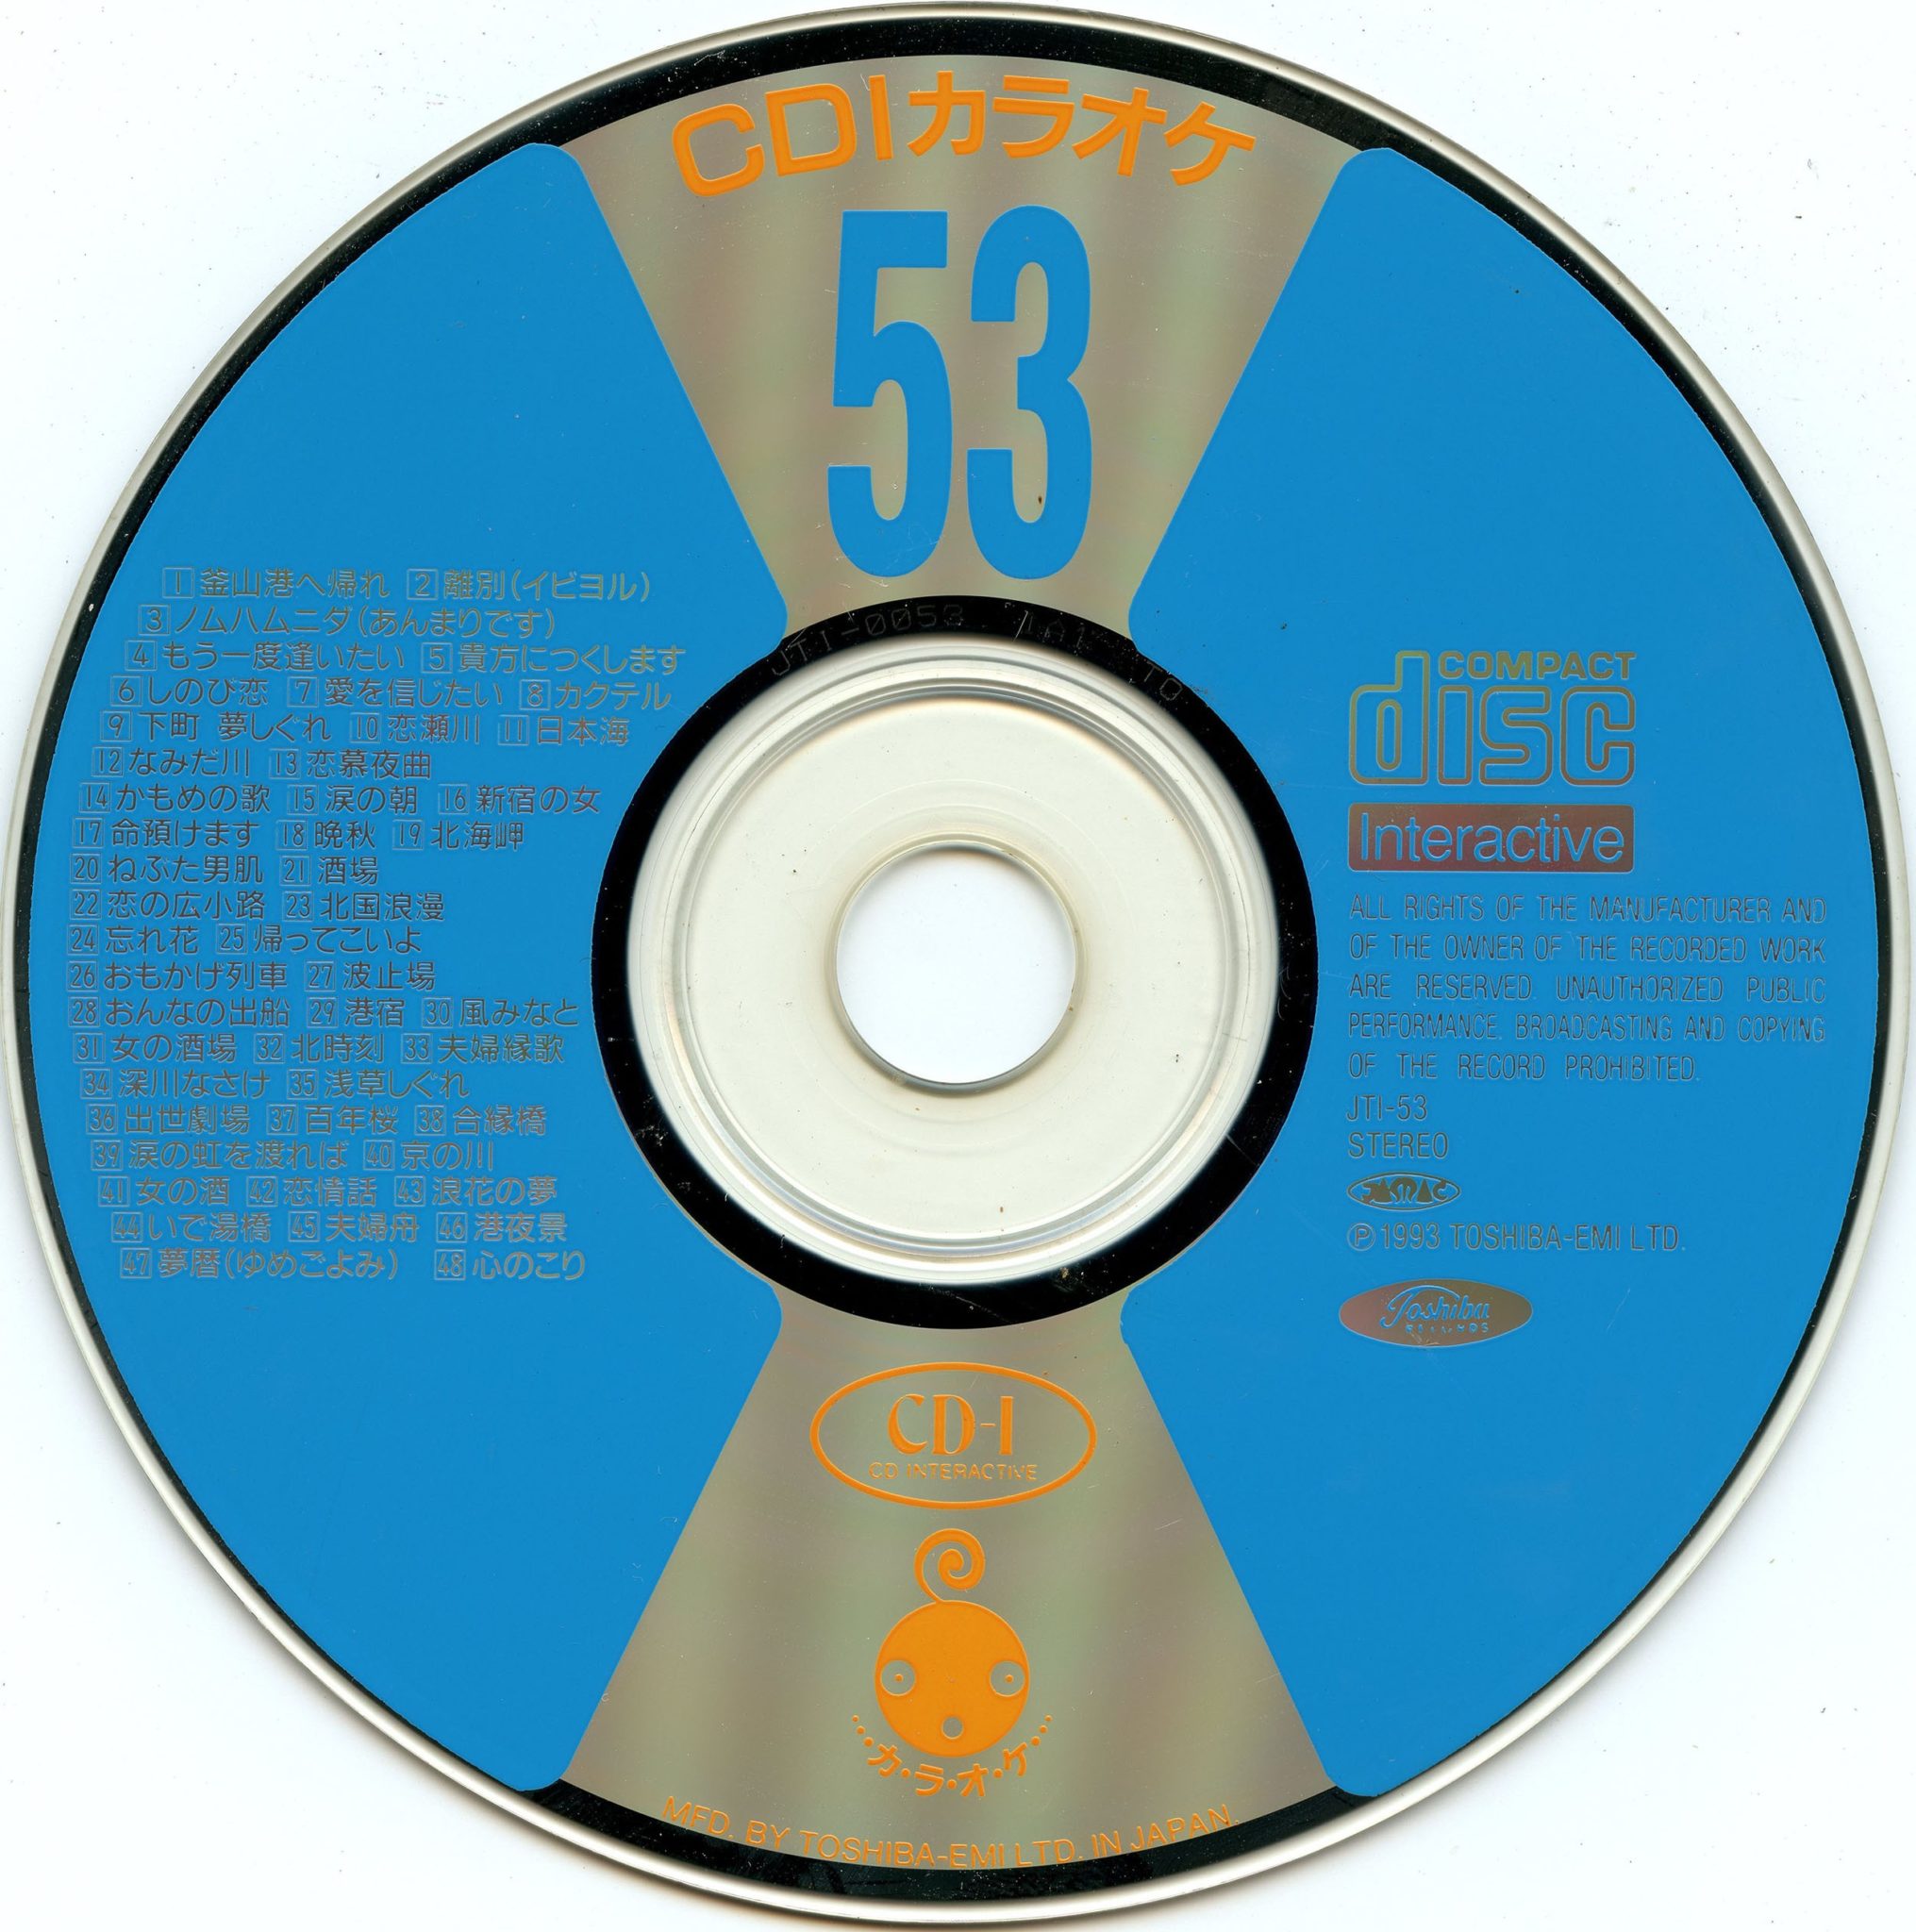 CD-i Karaoke 53 – The World of CD-i